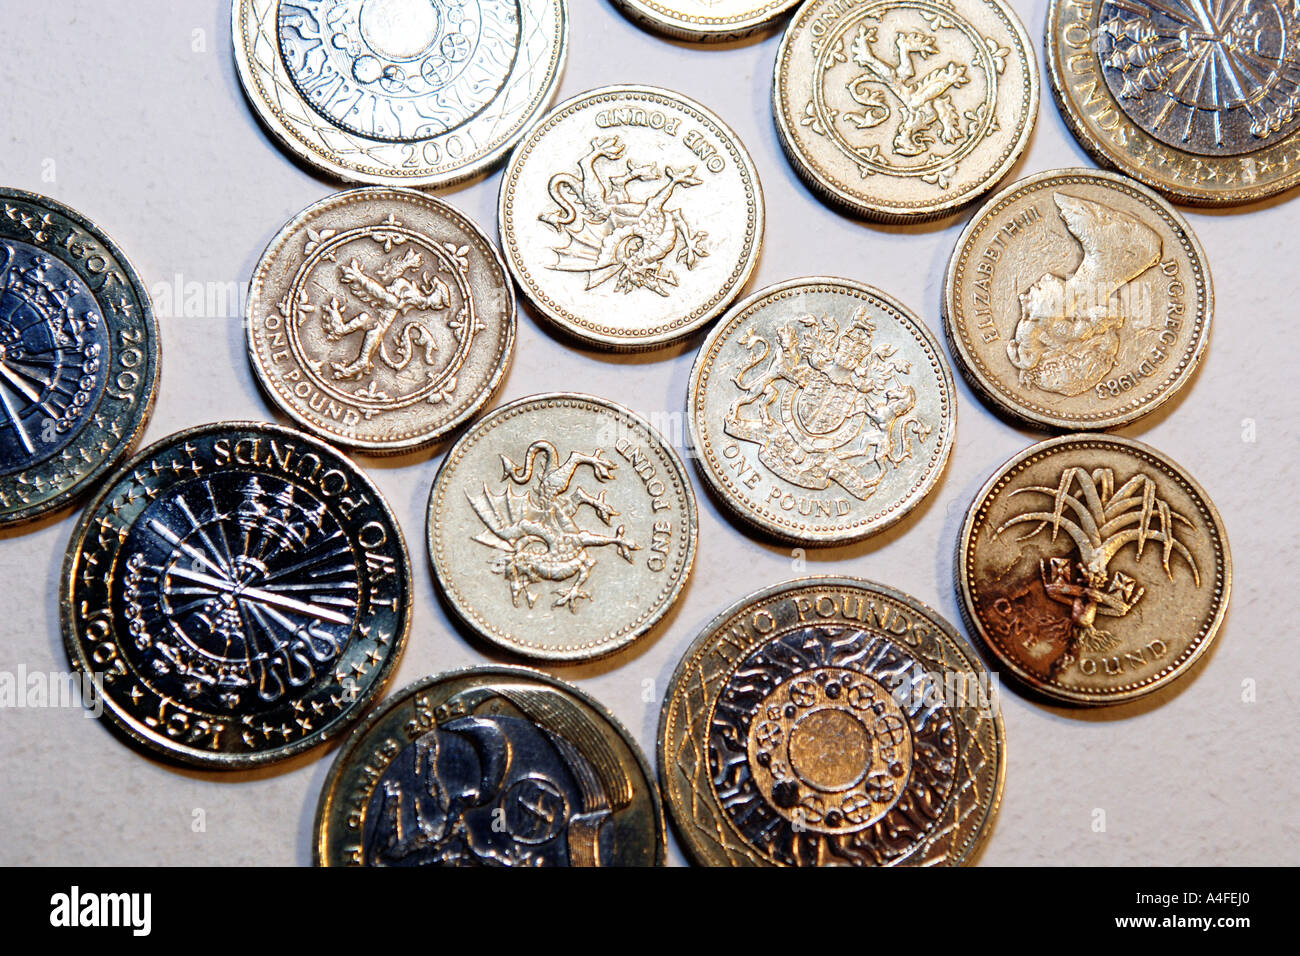 English pound coins Stock Photo